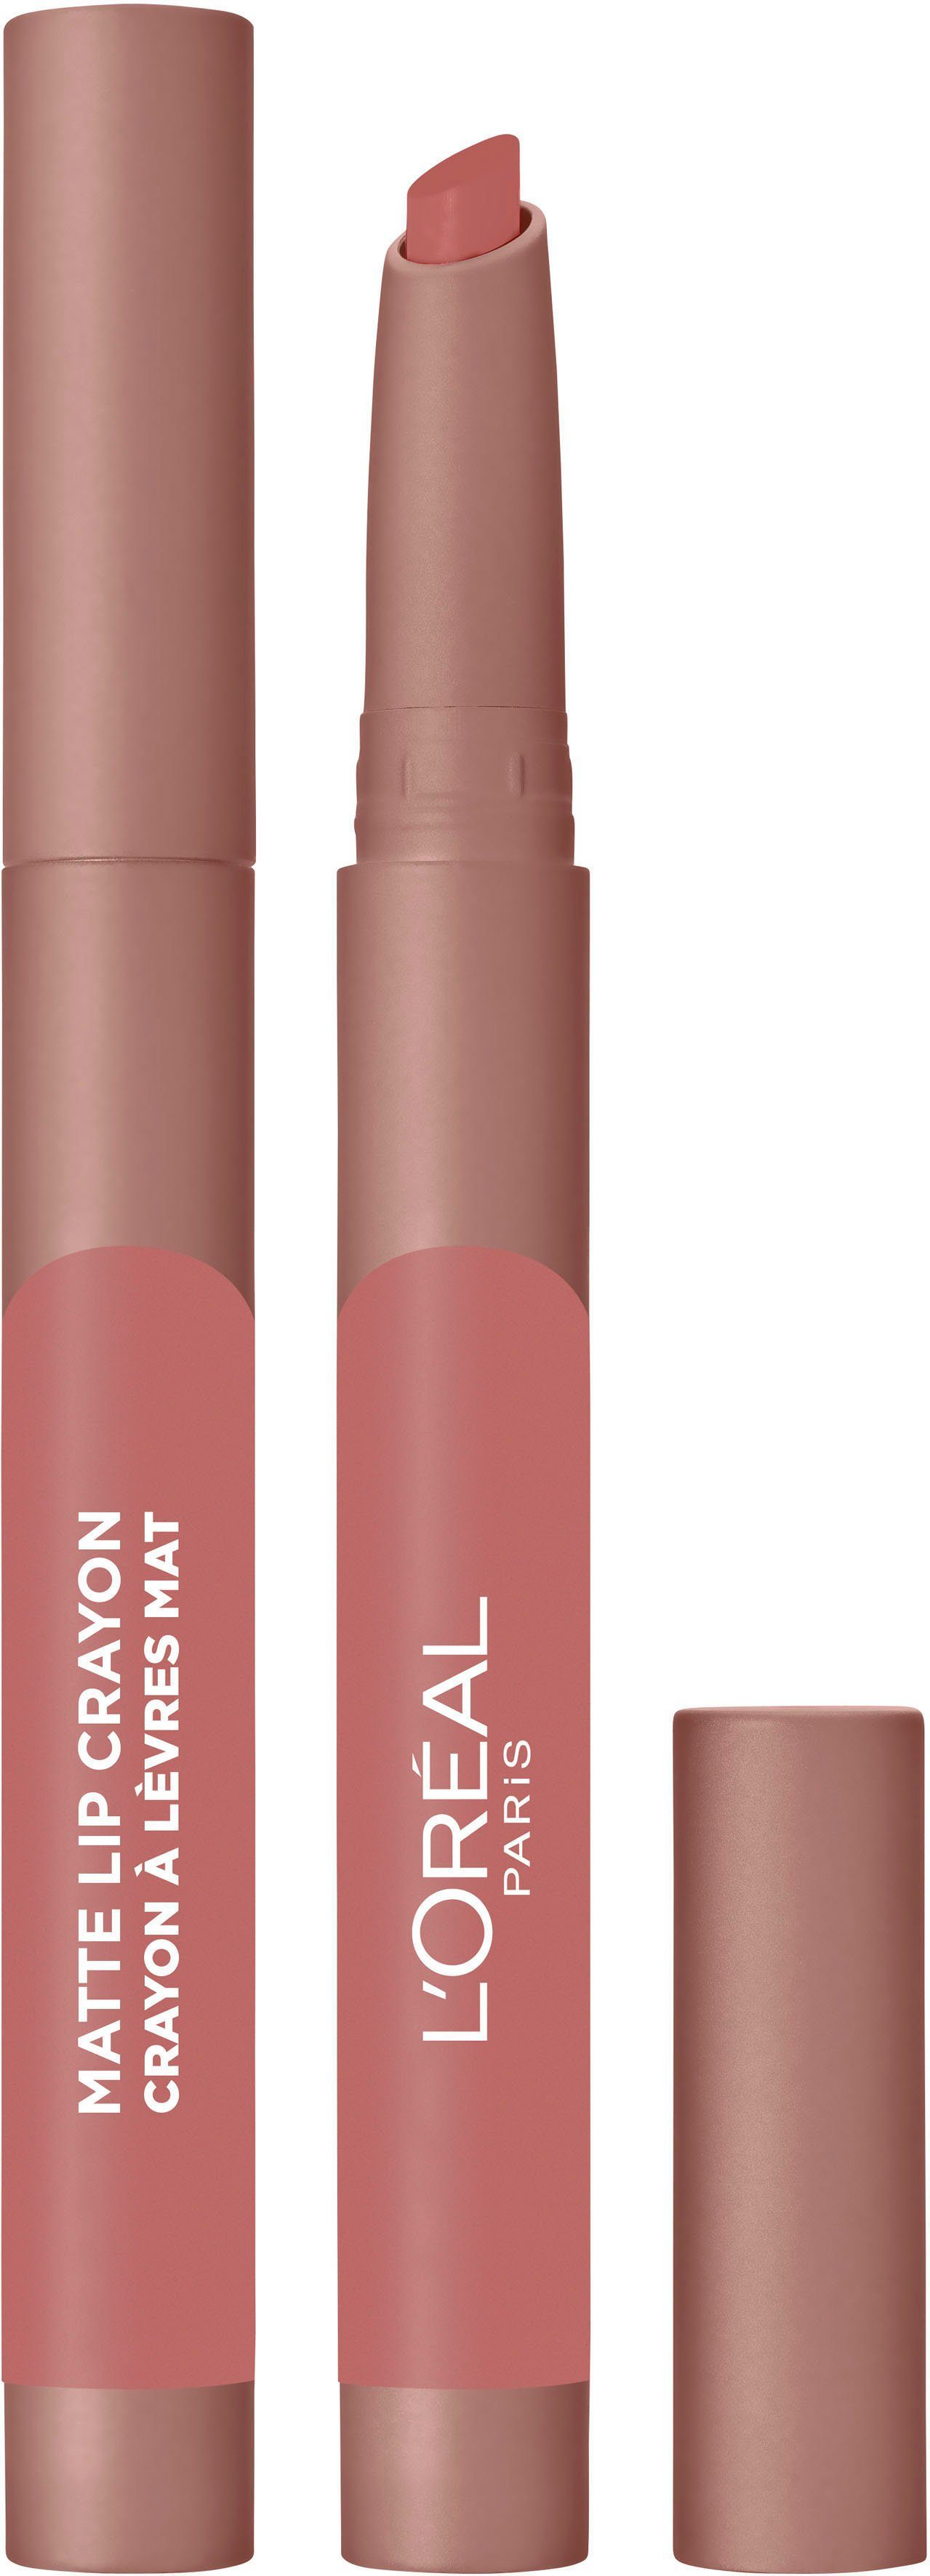 L'ORÉAL PROFESSIONNEL Lip Lippenstift Crayon Blondie Infaillible Caramel 102 PARIS L'ORÉAL PARIS Matte